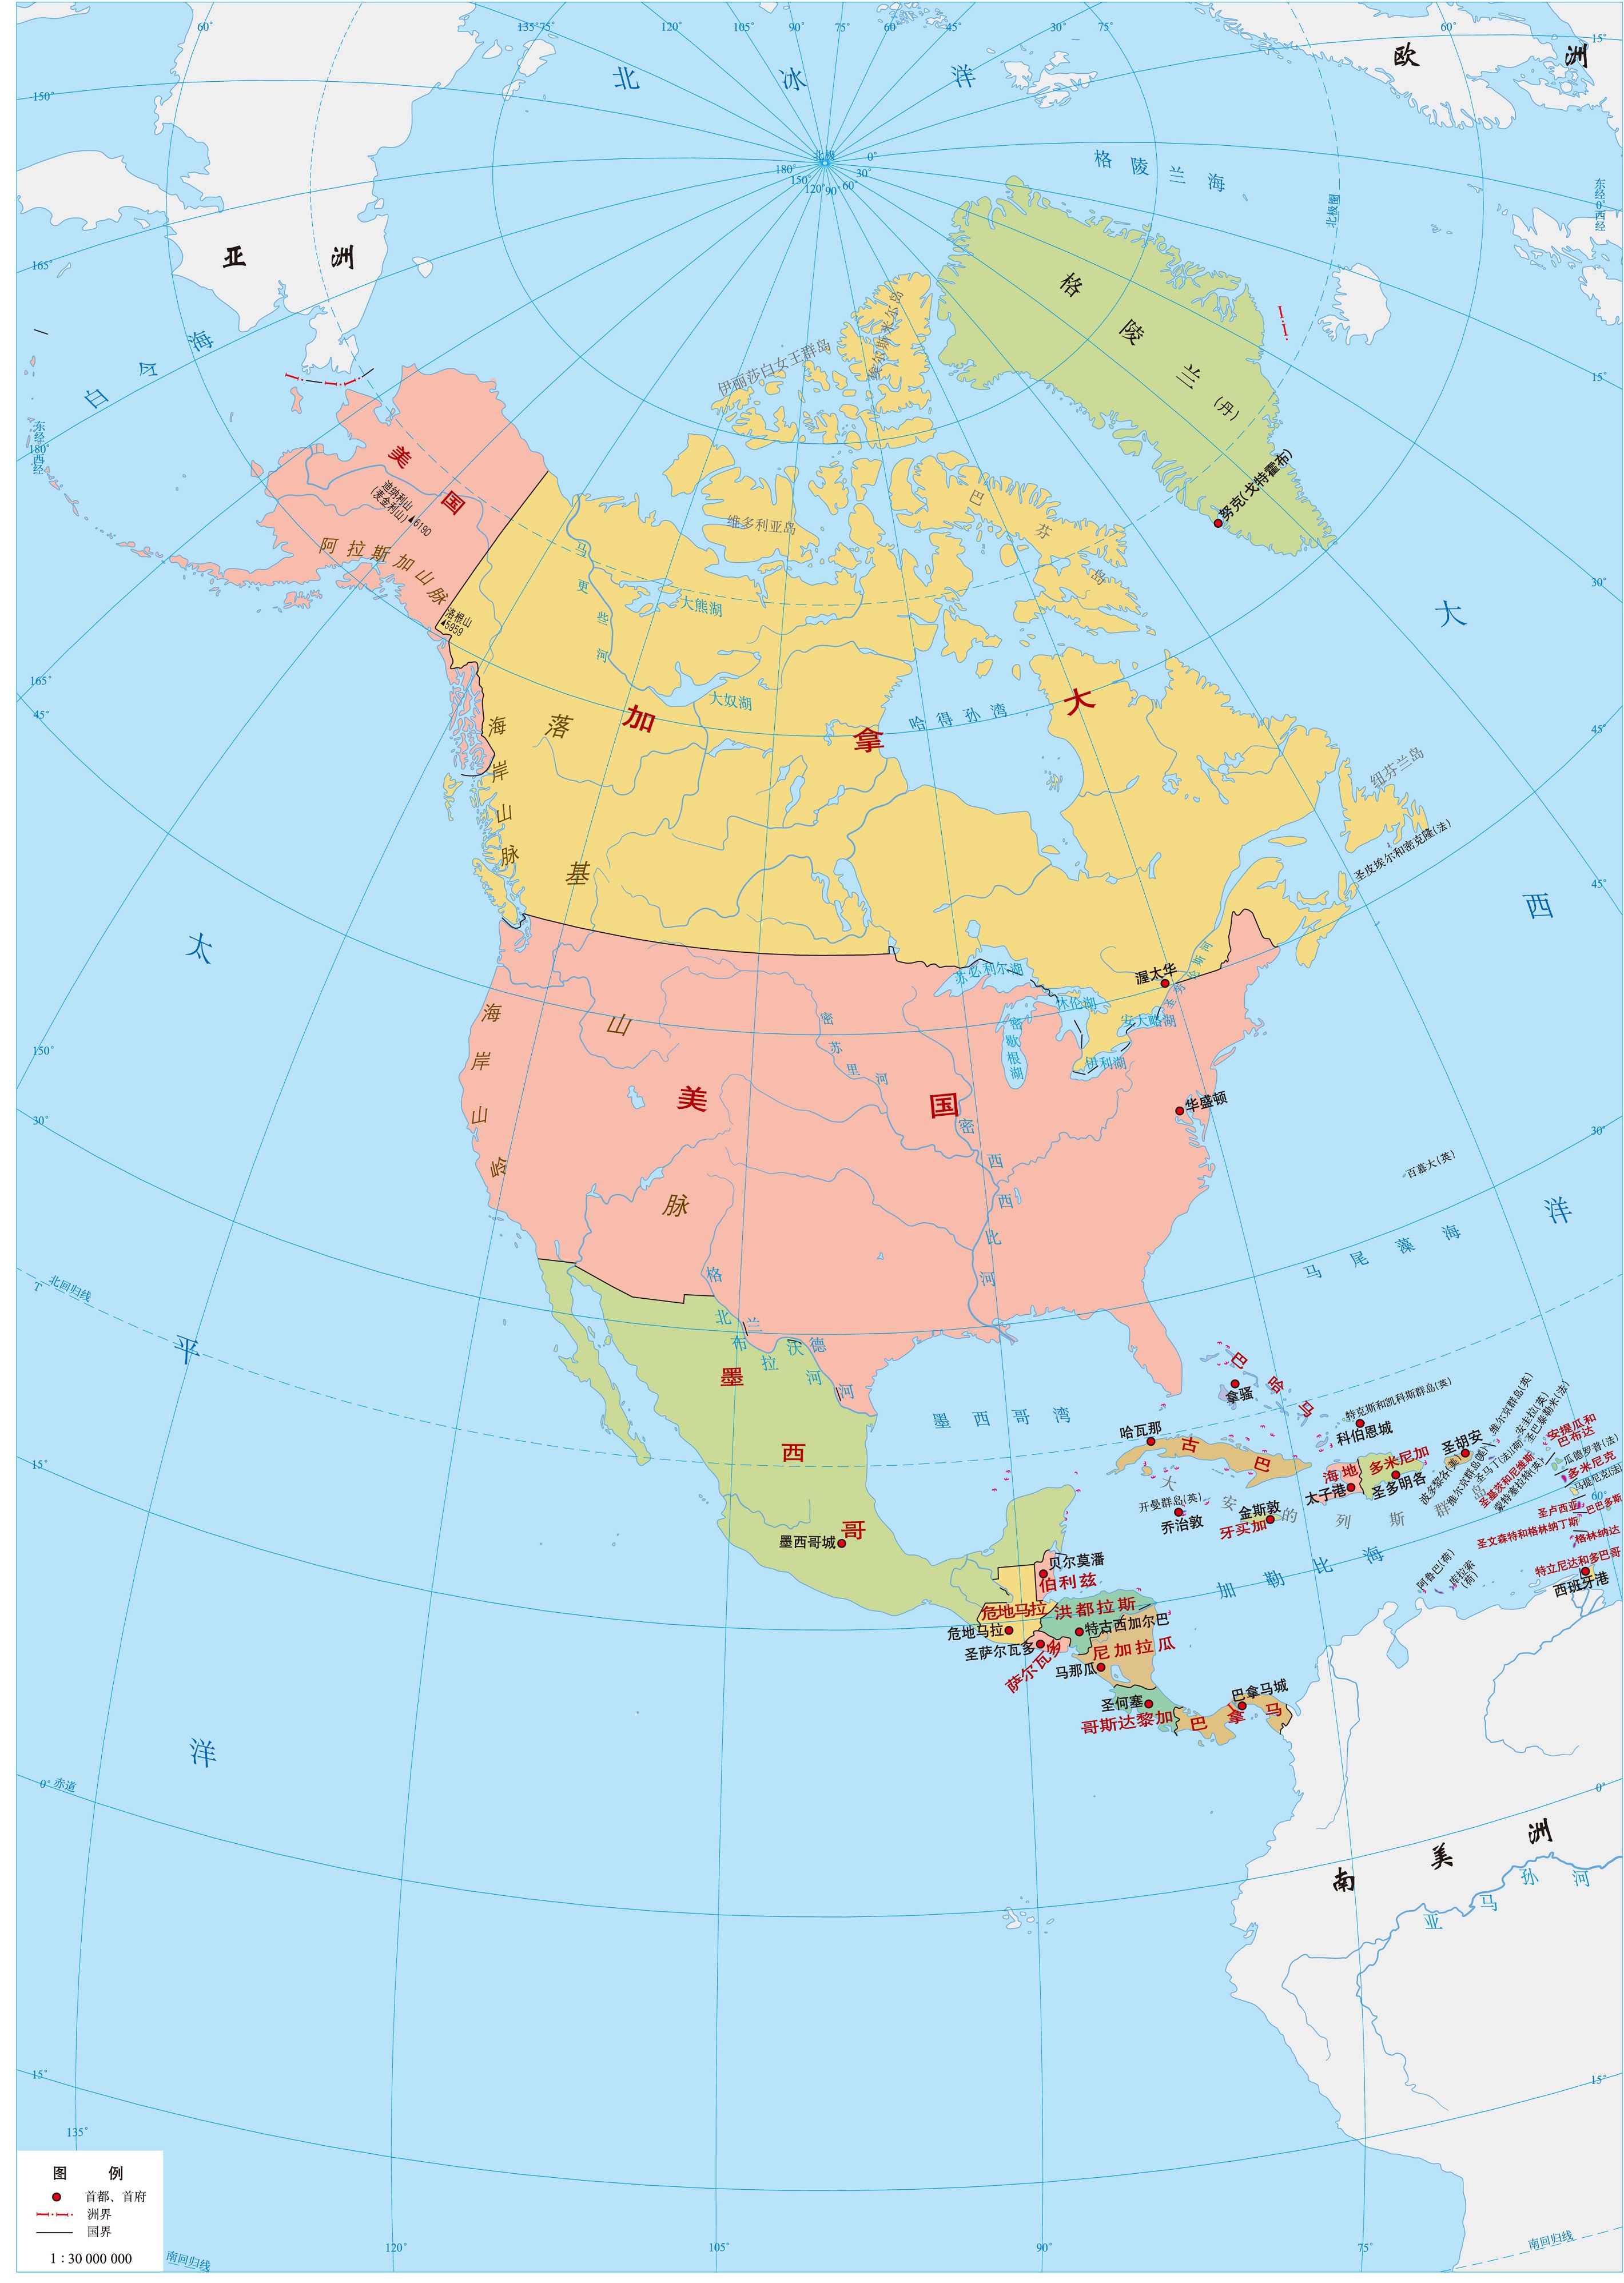 不过加拿大,美国和墨西哥三国的国土面积占了北美洲的绝大多数,约占北